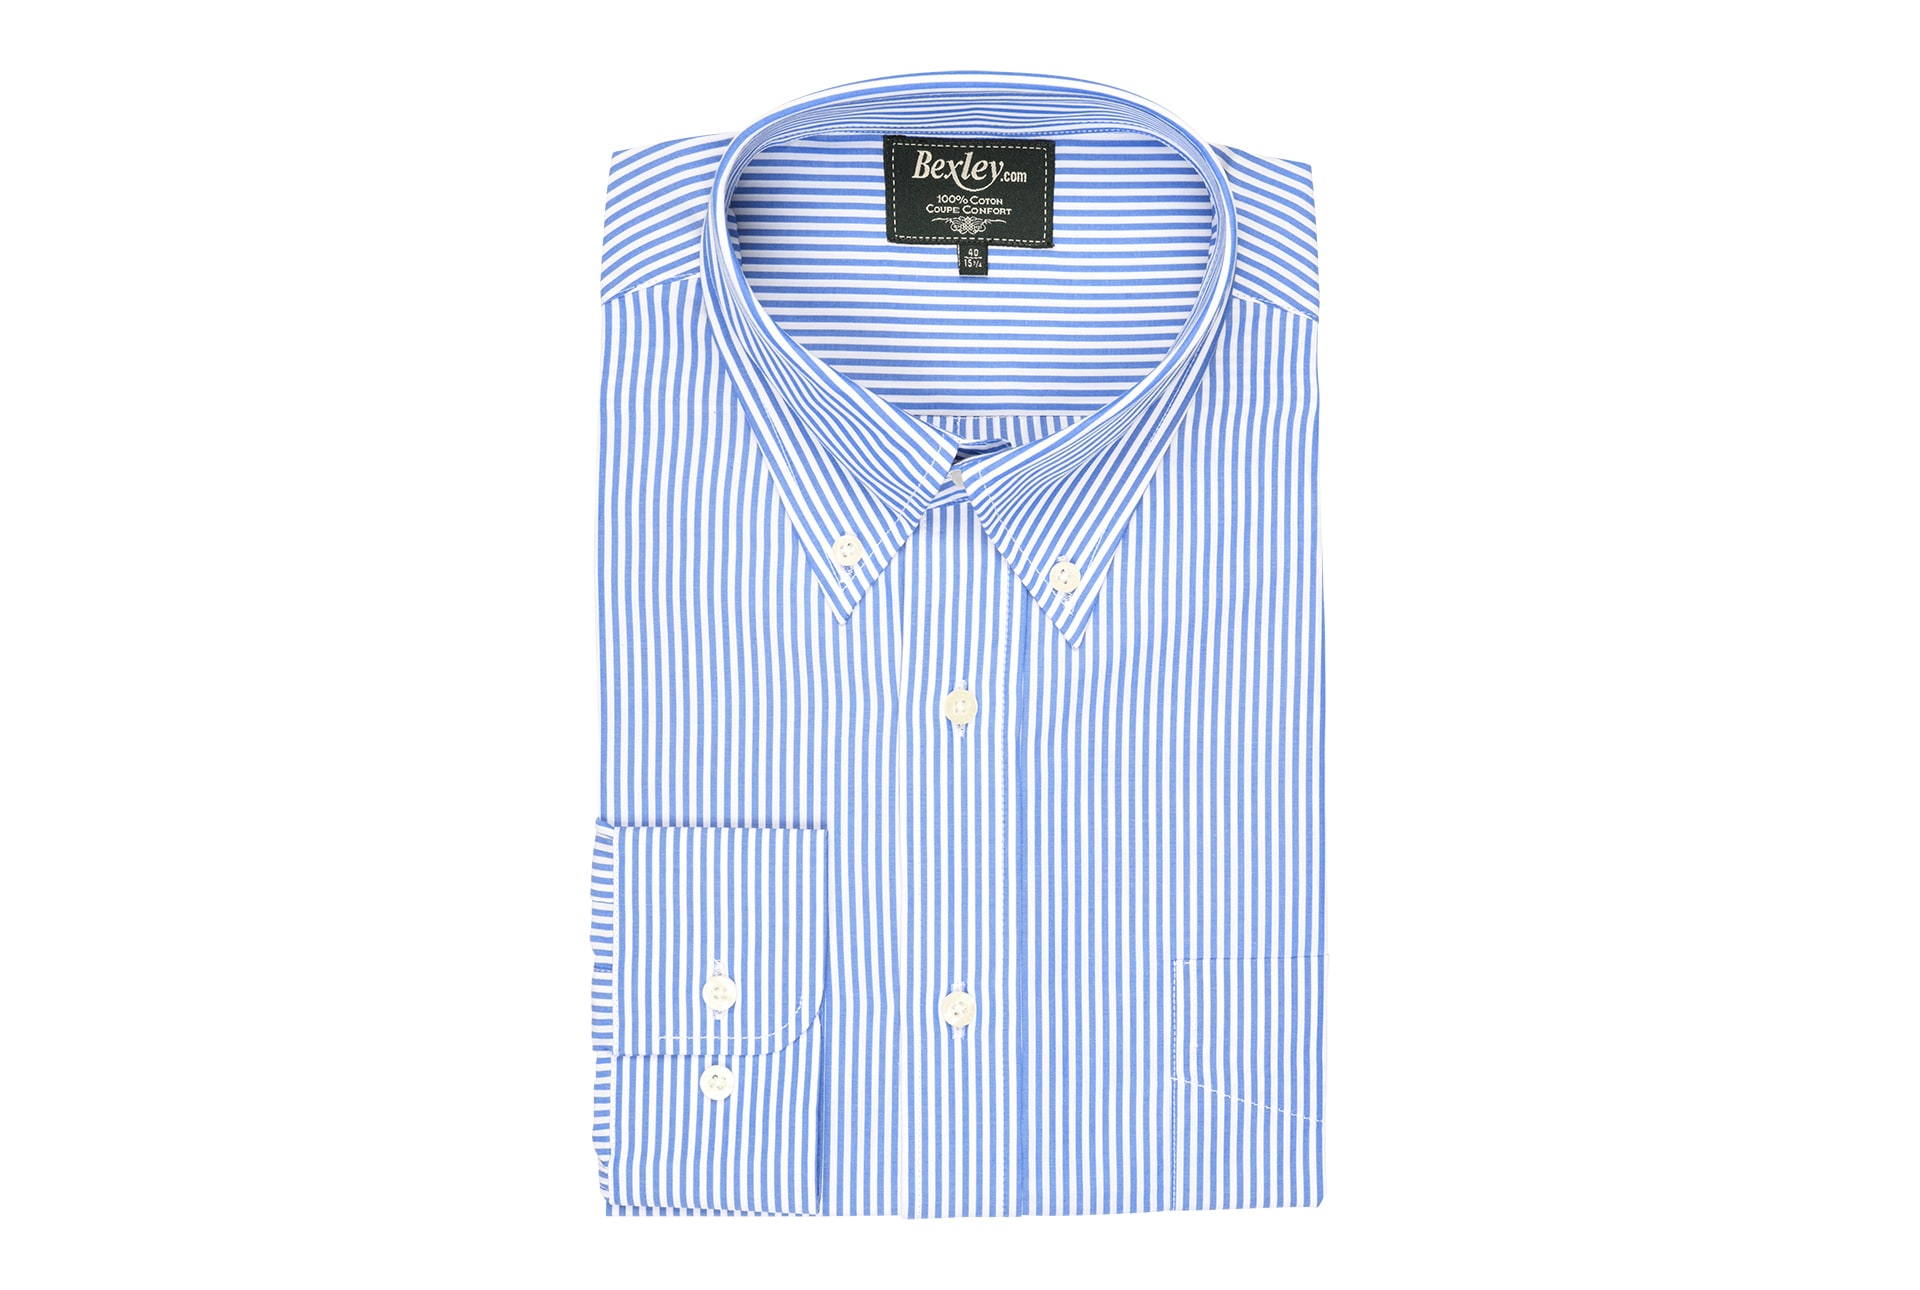 bexley chemise homme 100% coton, bleu ocean et blanc, manches longues, coupe confort